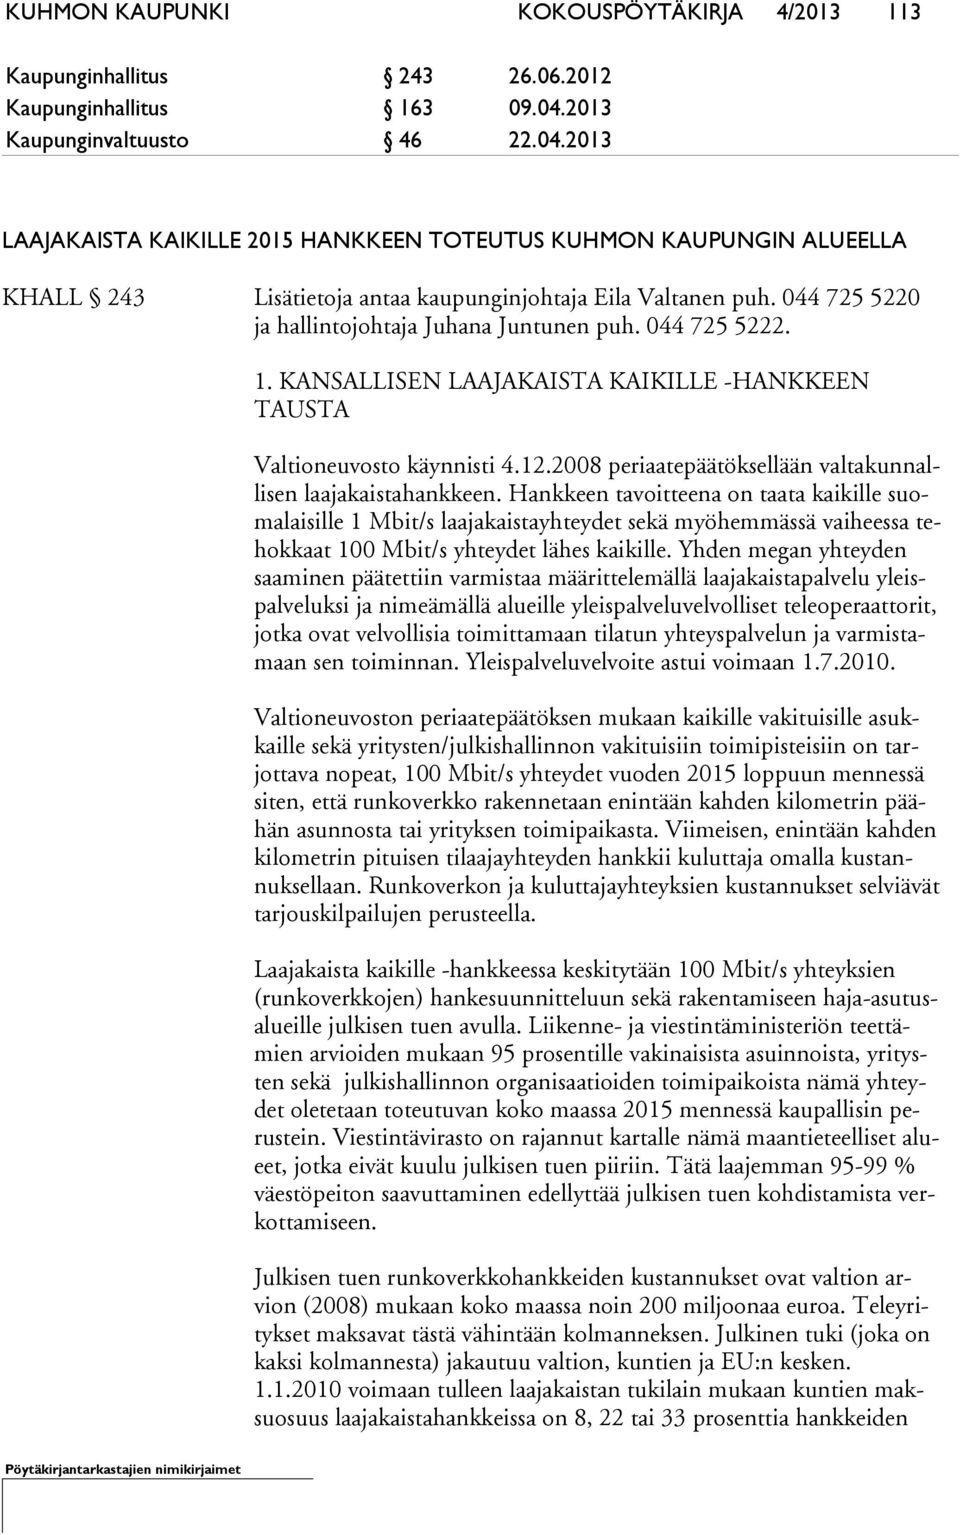 044 725 5220 ja hallintojohtaja Juhana Juntunen puh. 044 725 5222. 1. KANSALLISEN LAAJAKAISTA KAIKILLE -HANKKEEN TAUS TA Valtioneuvosto käynnisti 4.12.